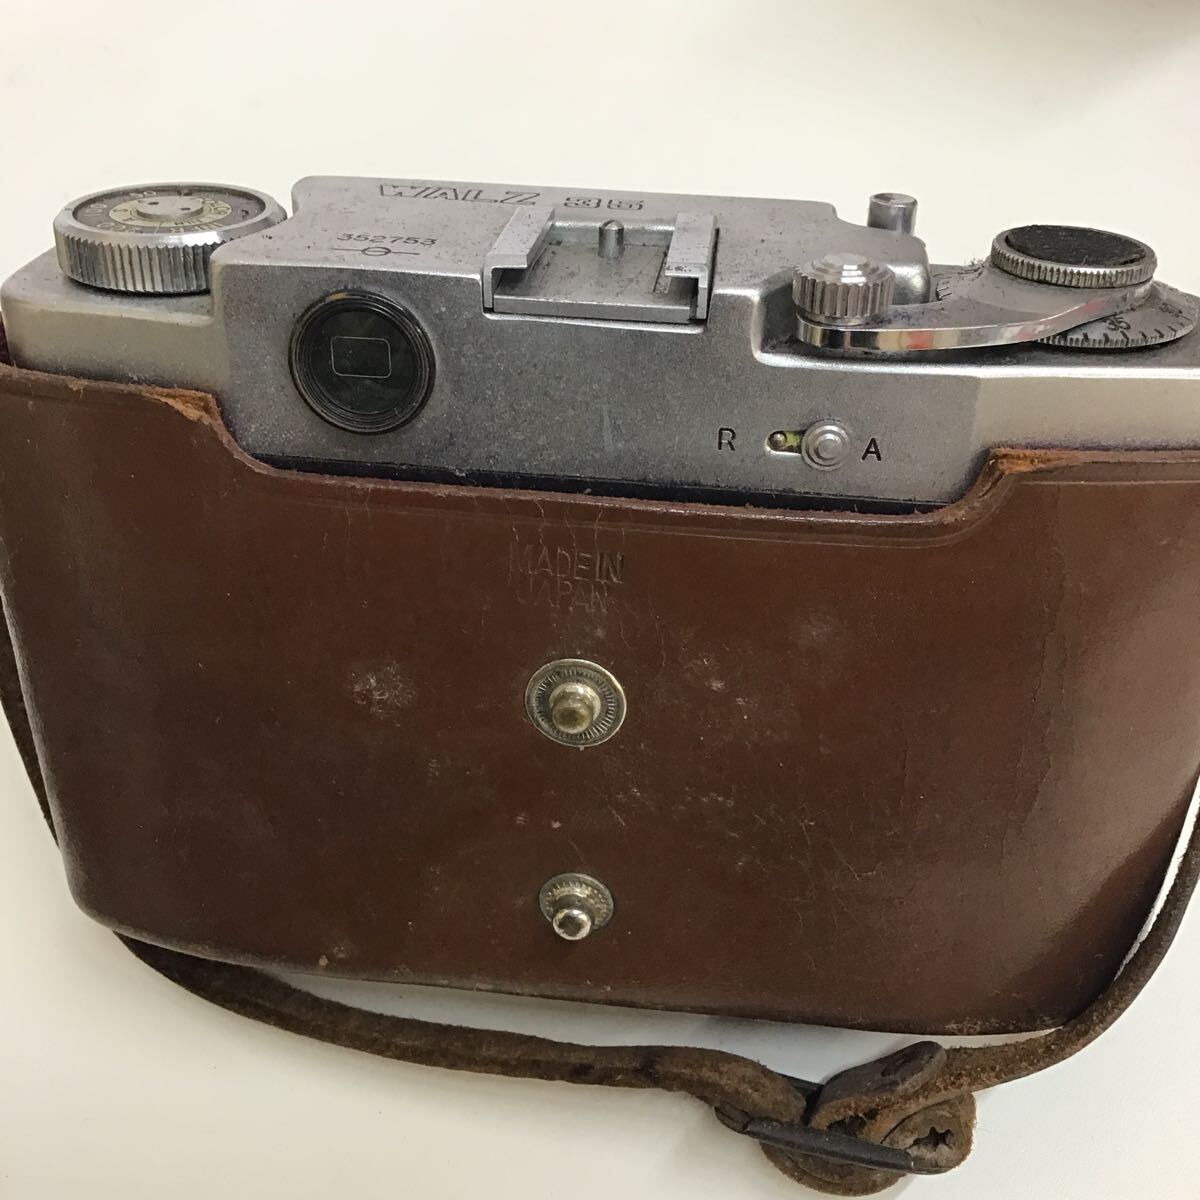 WALZ35 film camera camera retro [ Junk ]